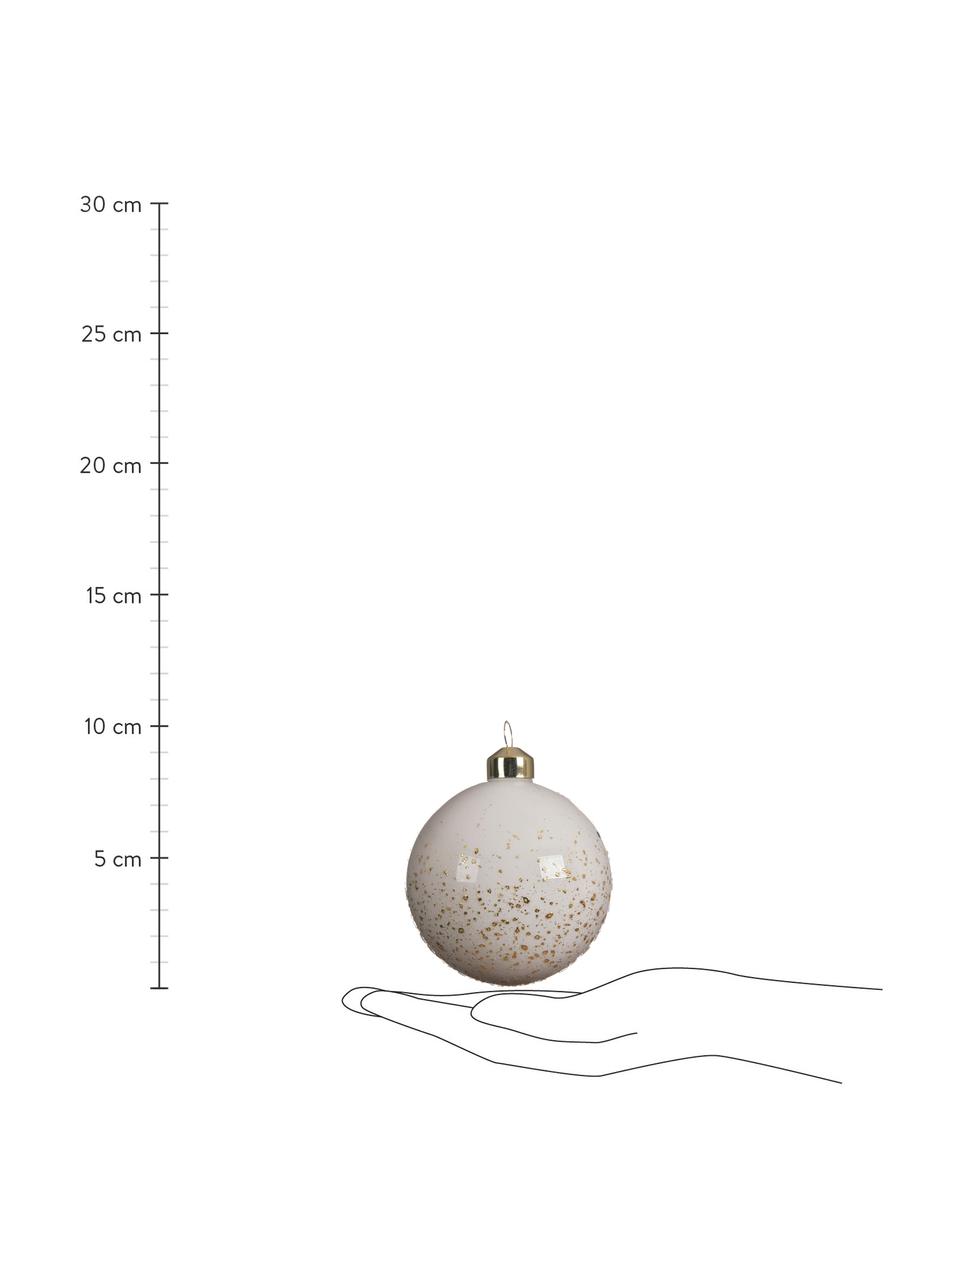 Kerstballen Spotty, set van 4, Zwart, wit, goudkleurig, Ø 8 cm